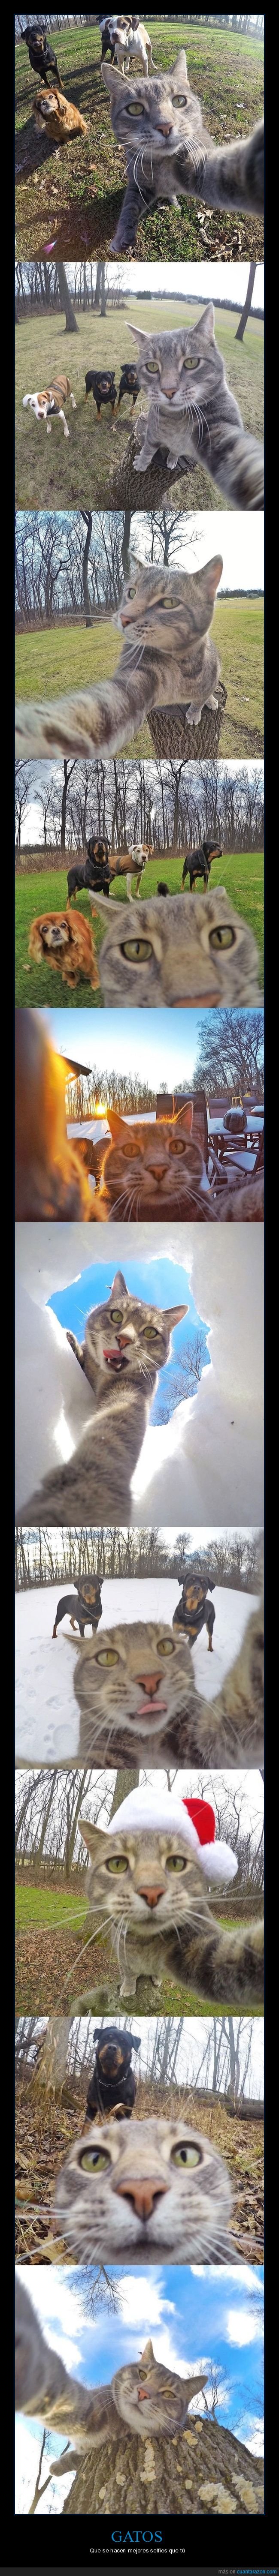 gatos,selfies,fotos